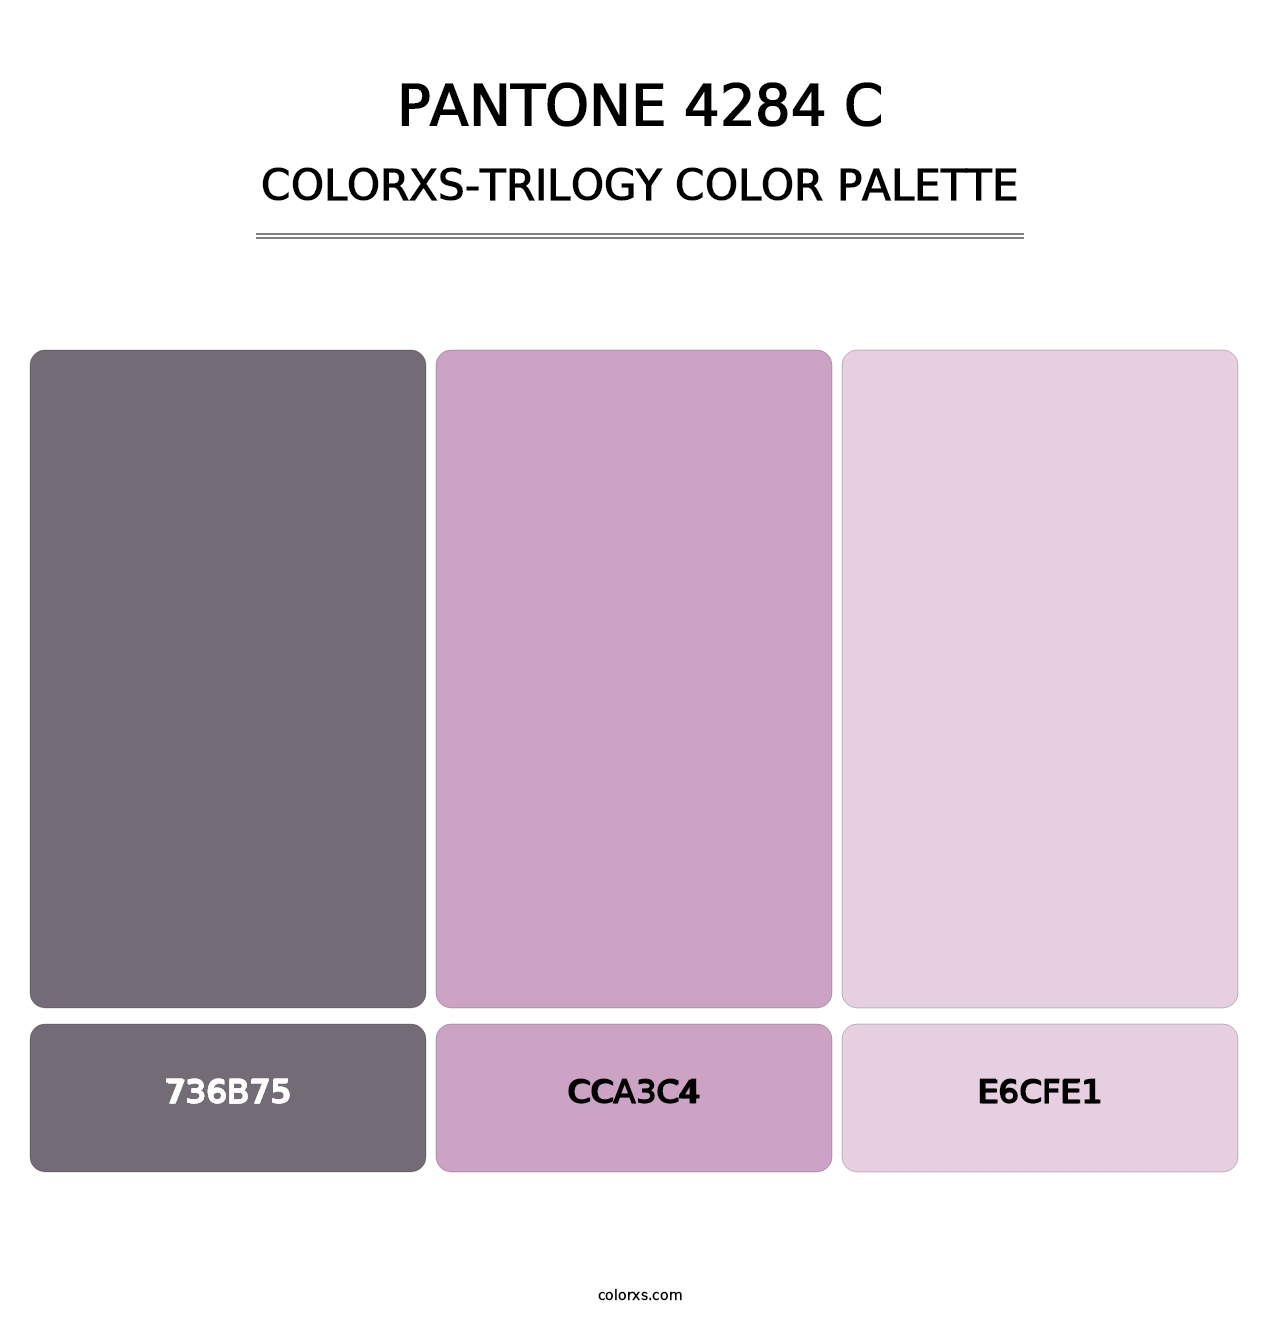 PANTONE 4284 C - Colorxs Trilogy Palette